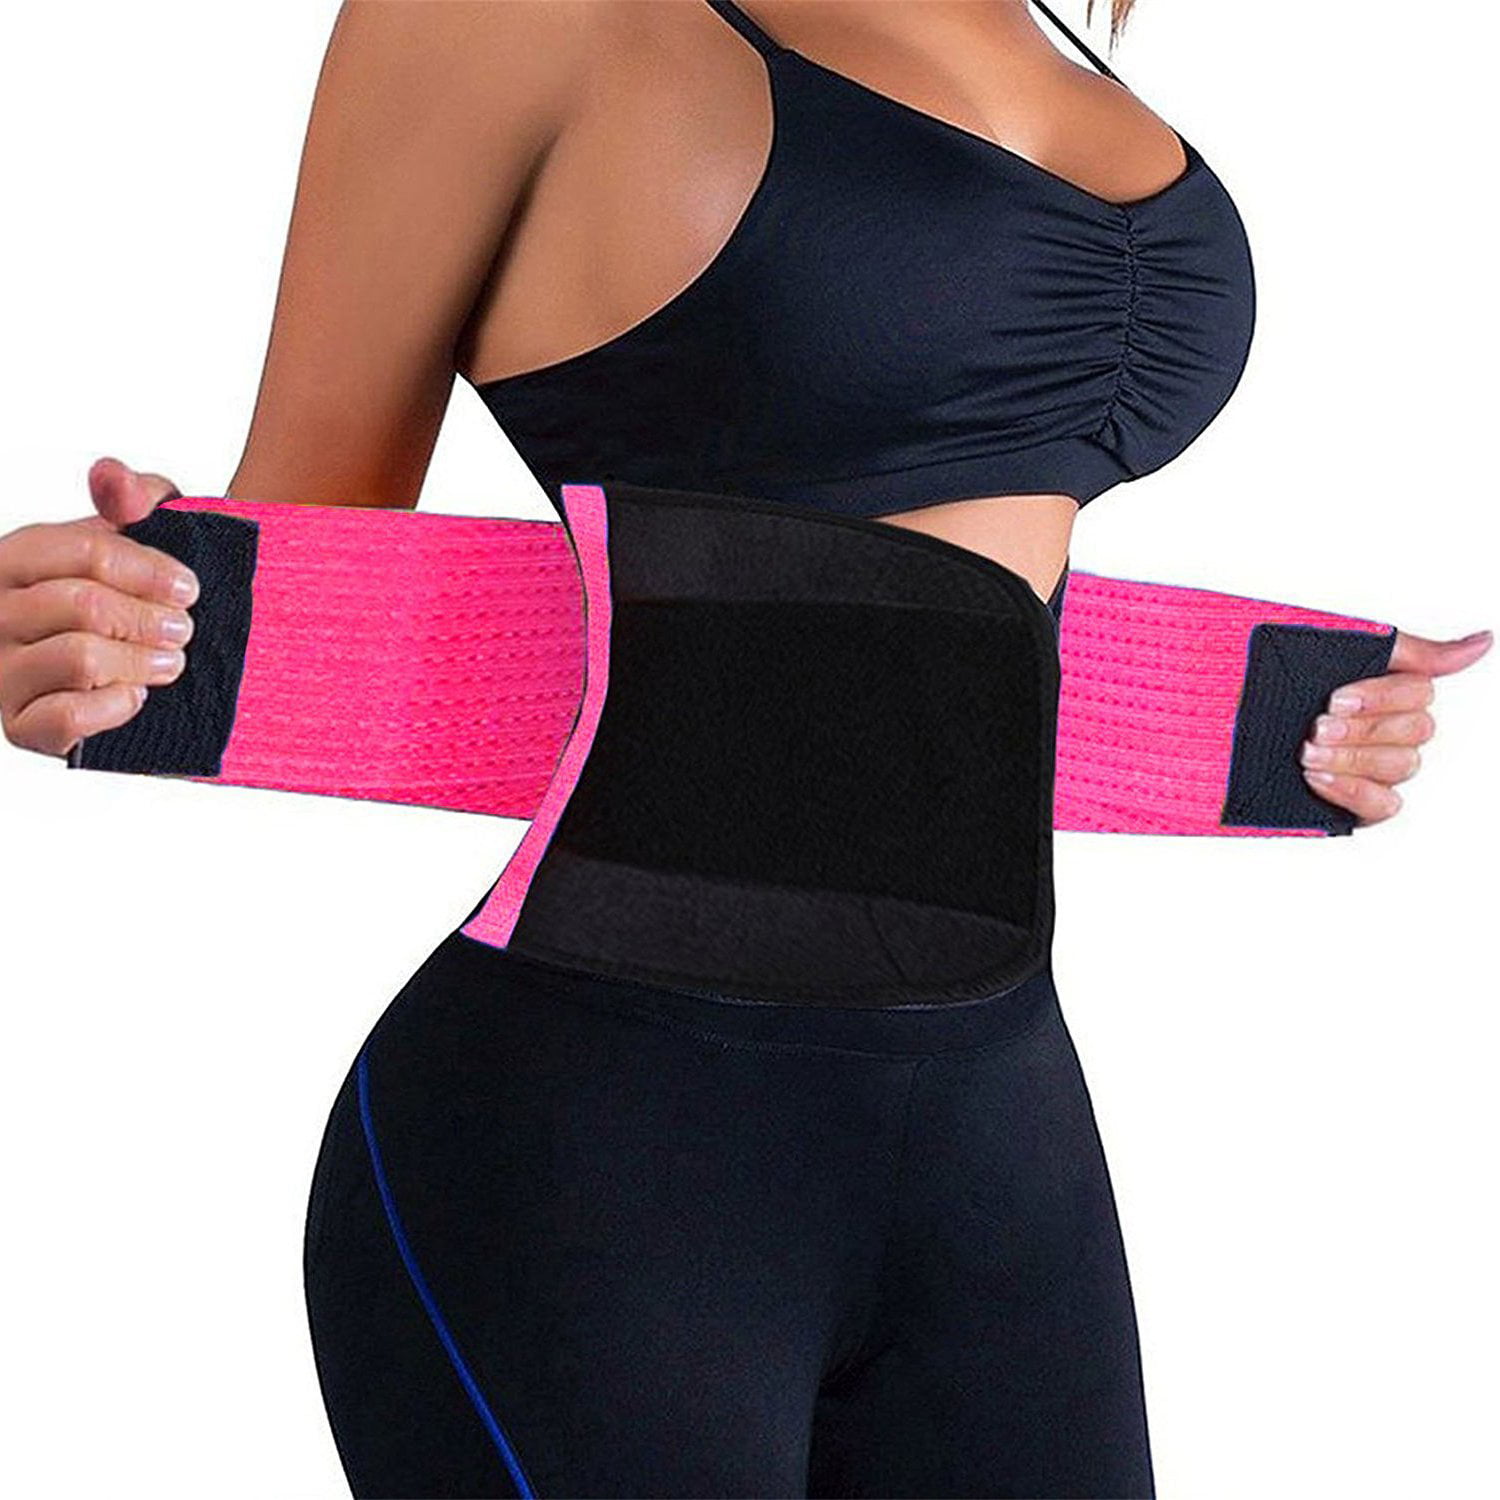 Women Waist Trainer Belt Waist Cincher Trimmer Slimming Body Shaper Belt for Weight Loss Sport Workout Red,Large 